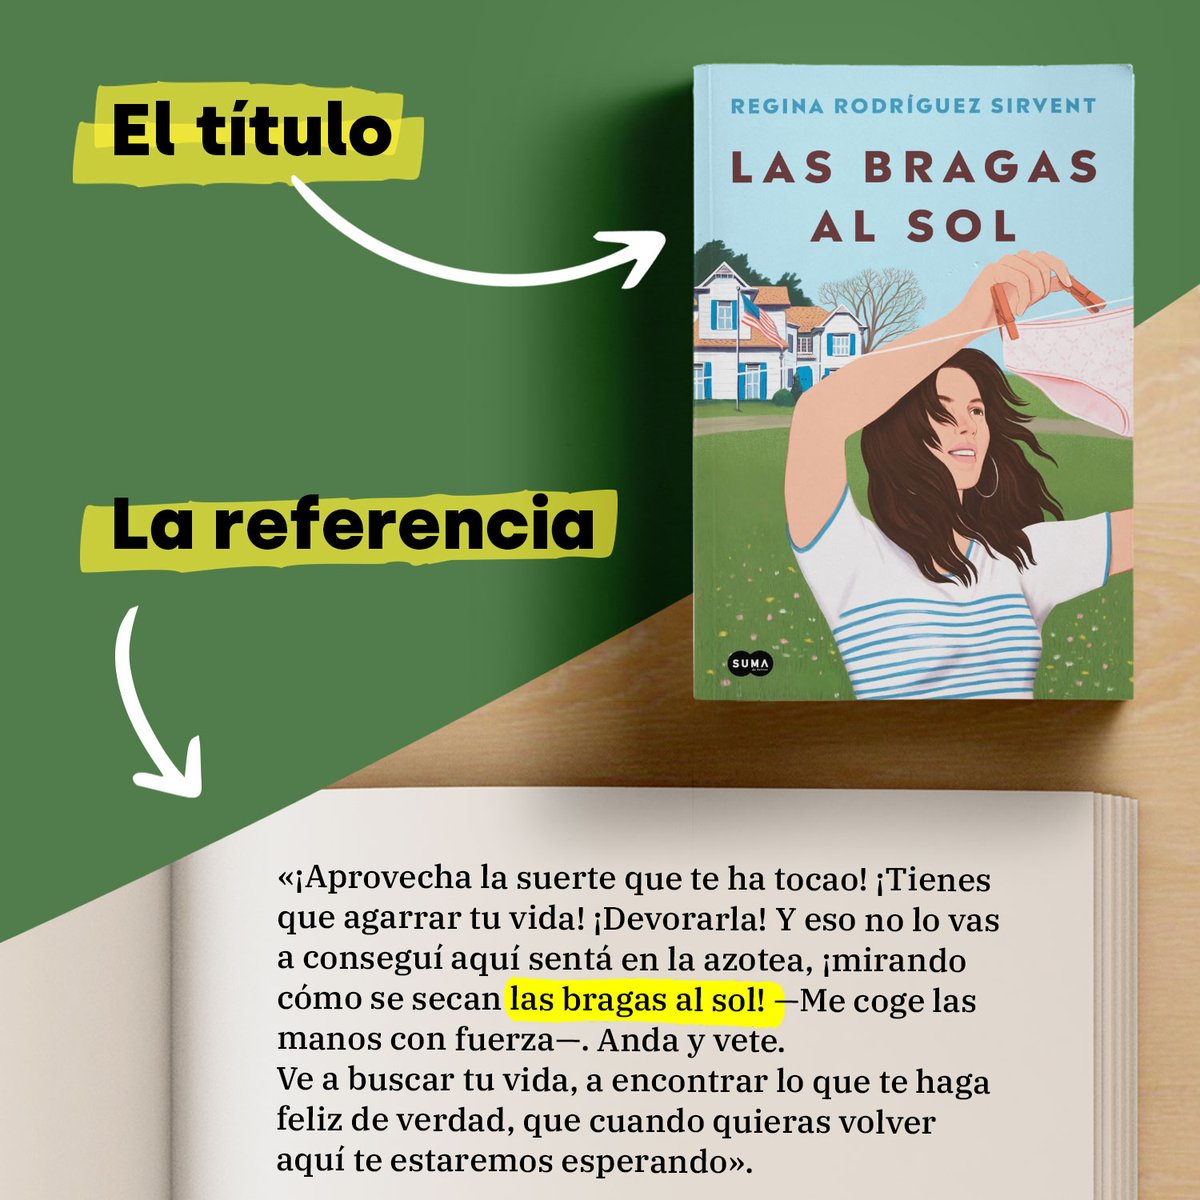 Penguin España 🐧📚 on X: «Las bragas al sol» de Regina Rodríguez Sirvent  @holasoclaregi debe su nombre a esta frase del libro. 👇🏽 Tienes más  información sobre este fenómeno de ventas, aquí